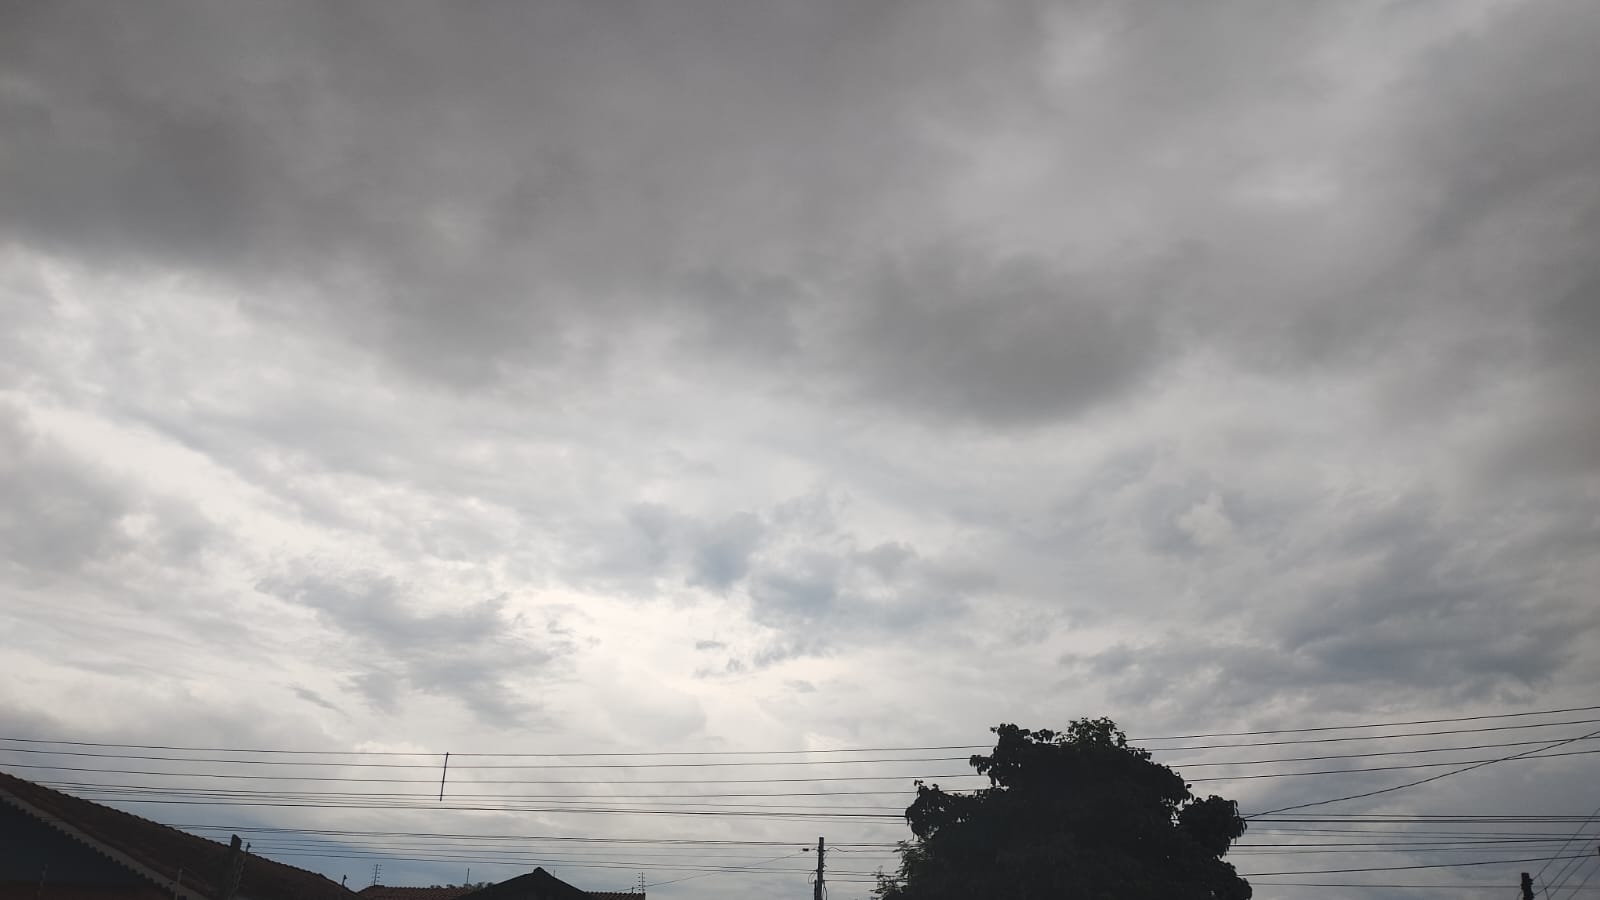 NA MESMA: Terça (13) de céu nublado e chuvas em RO, inclusive em N. Brasilândia d’Oeste